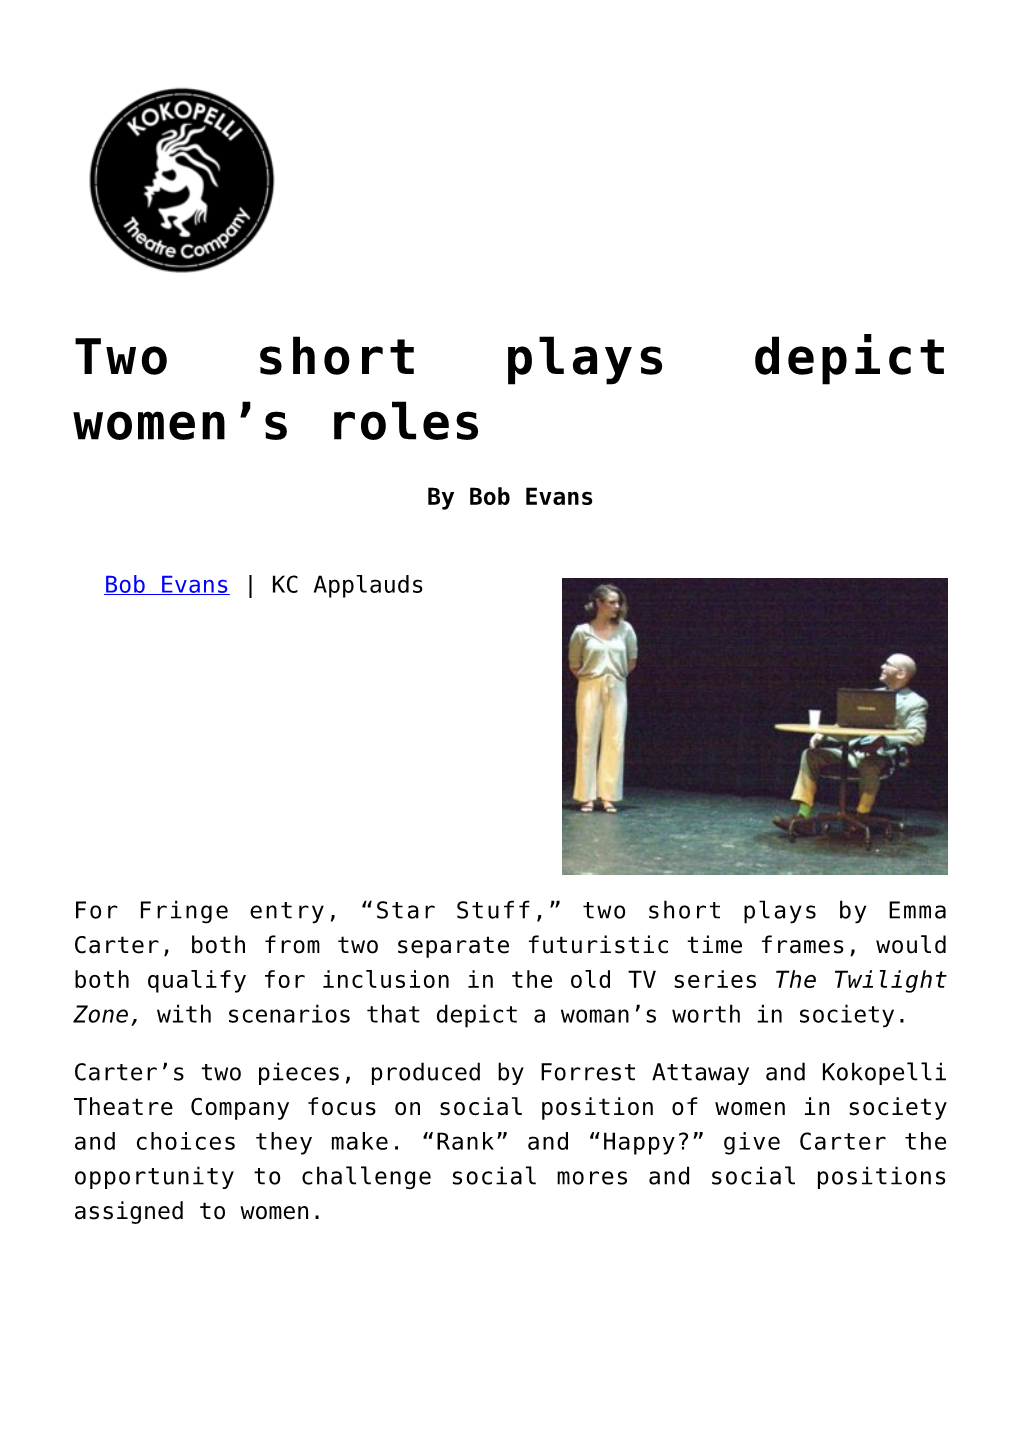 Two Short Plays Depict Women's Roles